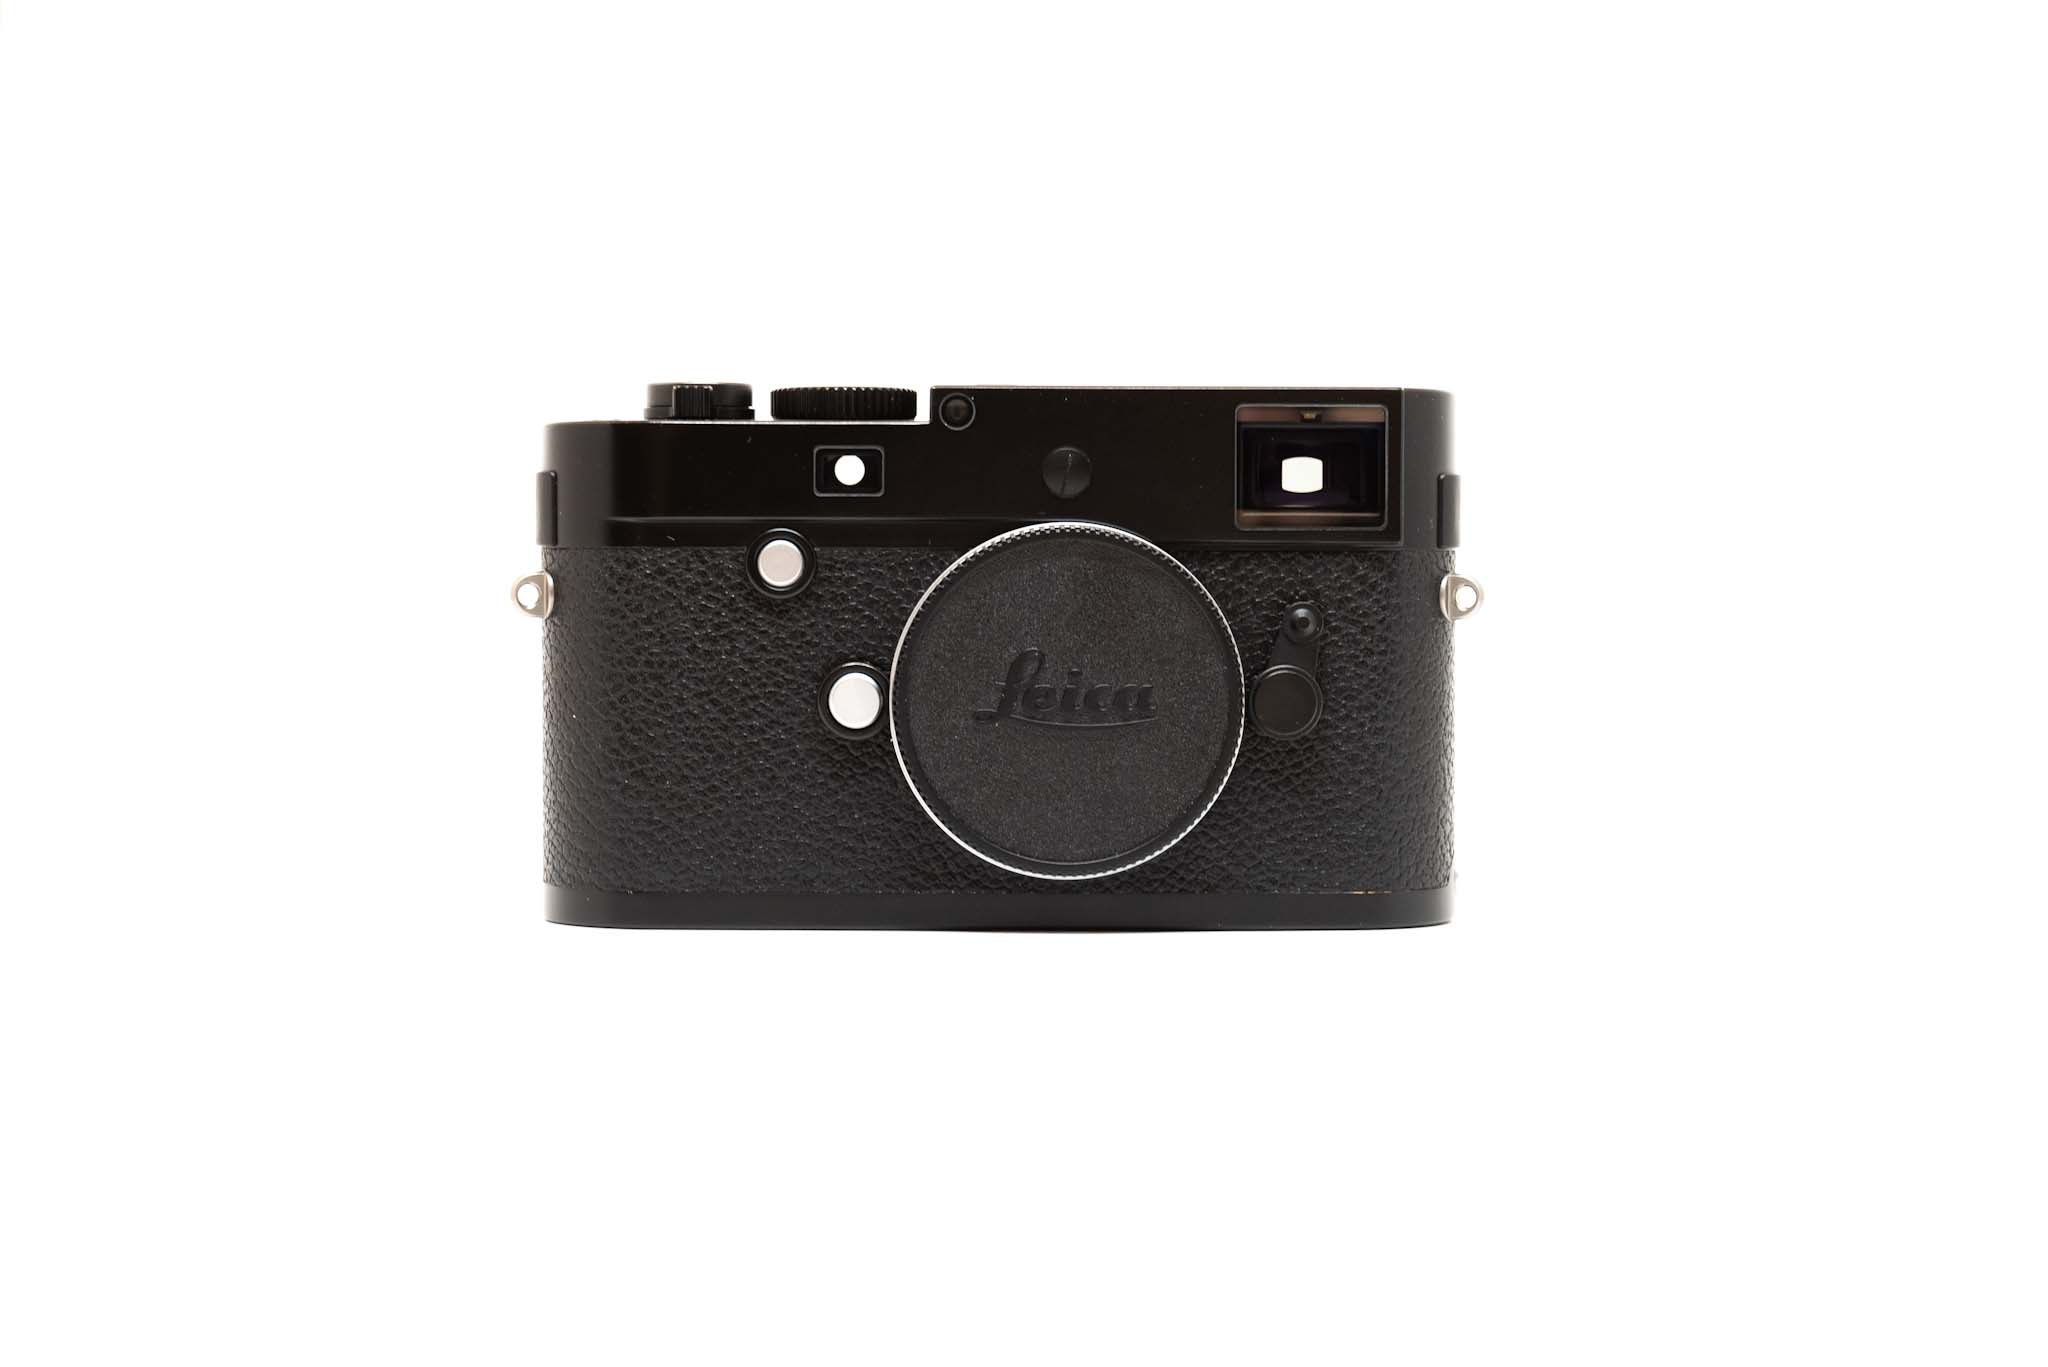 Leica M-P 240 Black